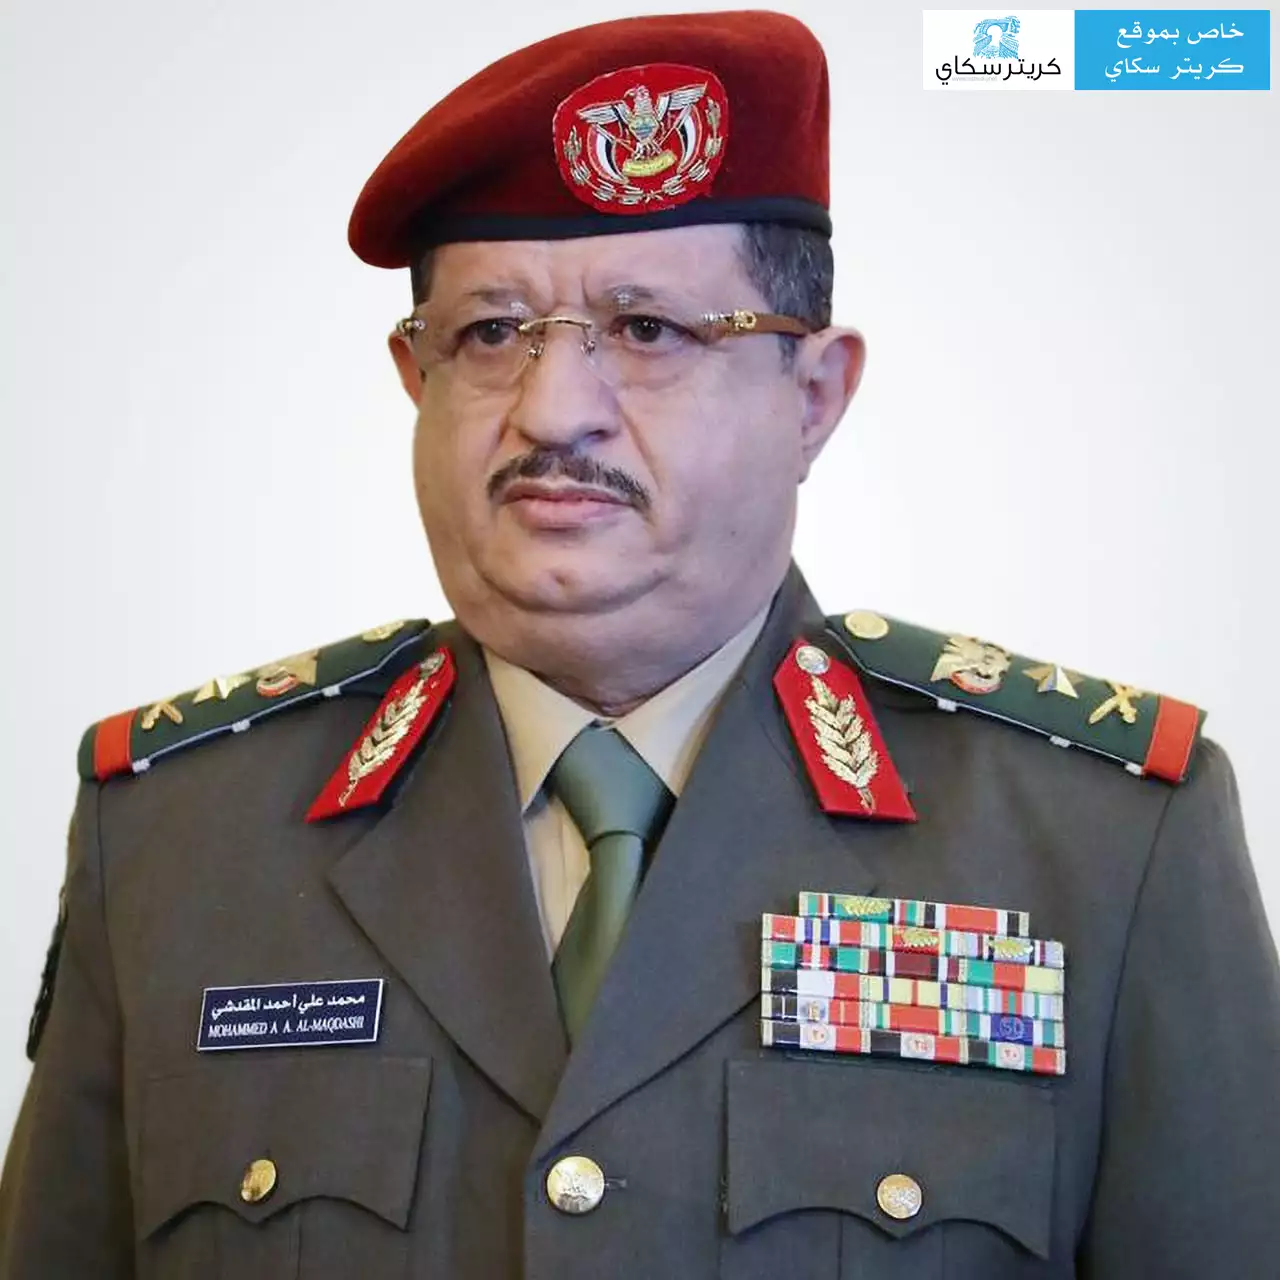 وزير الدفاع يكشف لقناة العربية موعد اقتحام العاصمة صنعاء والسيطرة عليها